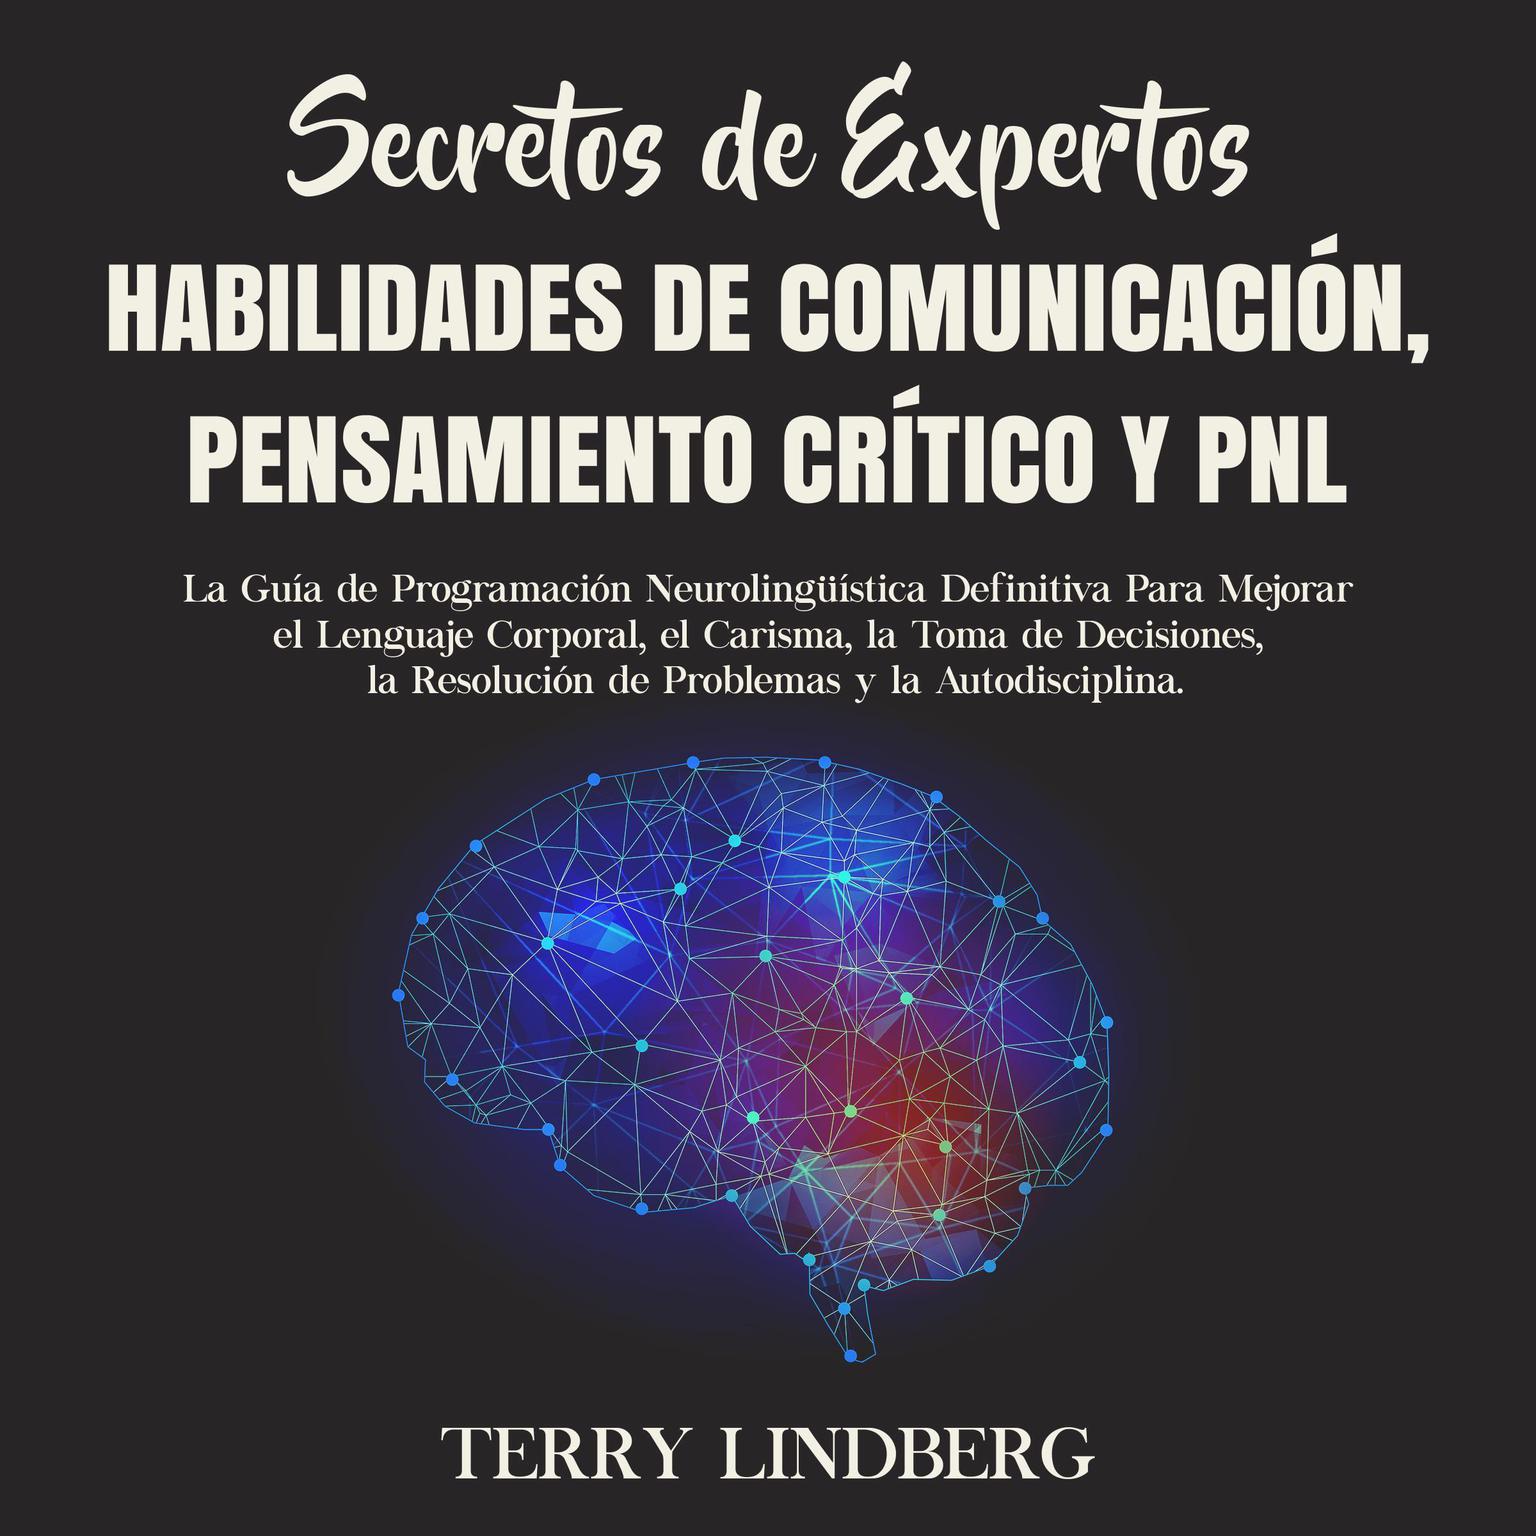 Secretos de Expertos - Habilidades de Comunicación, Pensamiento Crítico y PNL: La Guía de Programación Neurolingüística Definitiva Para Mejorar el Lenguaje Corporal, el Carisma, la Toma de Decisiones, la Resolución de Problemas y la Autodisciplina. Audiobook, by Terry Lindberg